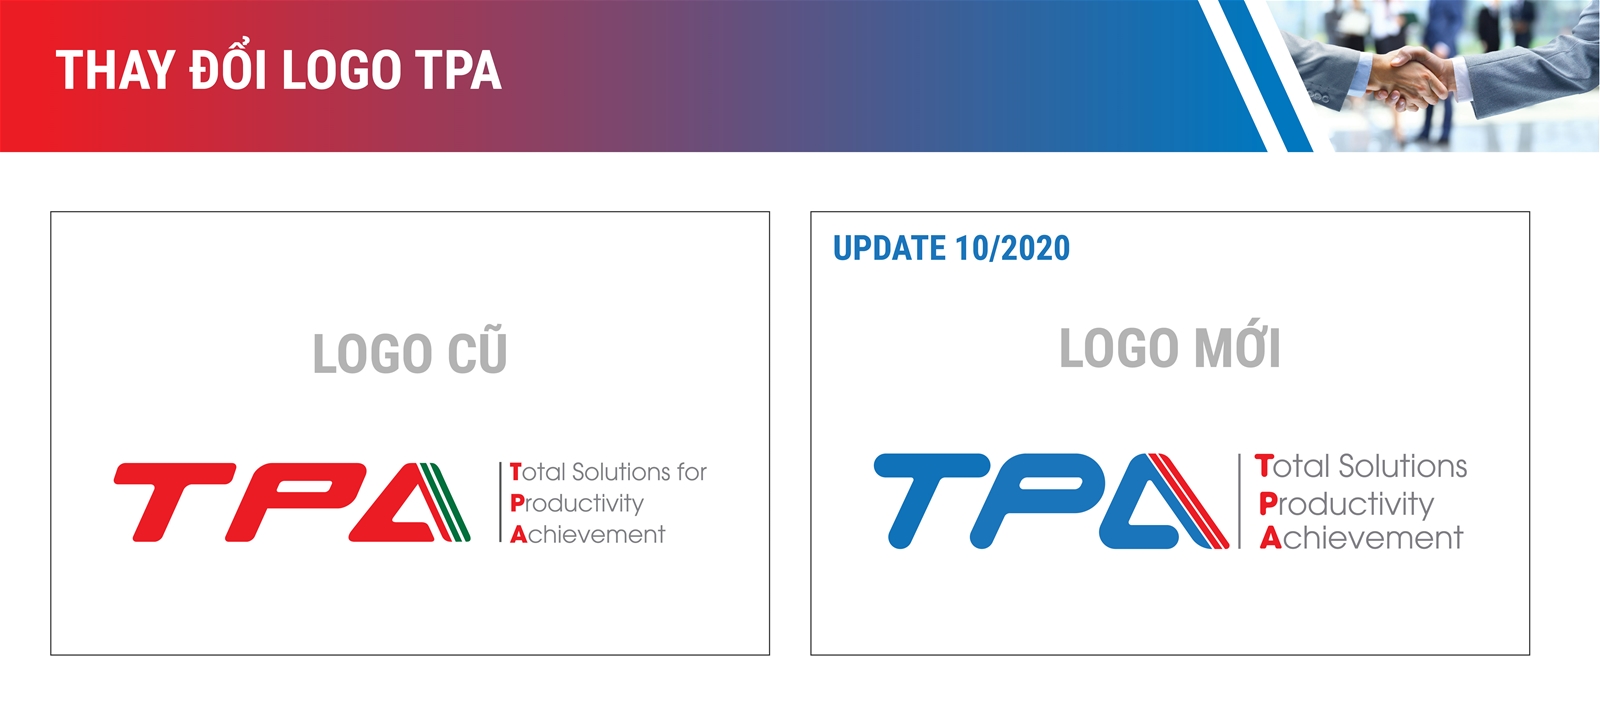 Hình ảnh logo và bộ nhận diện thương hiệu TPA được thay đổi 